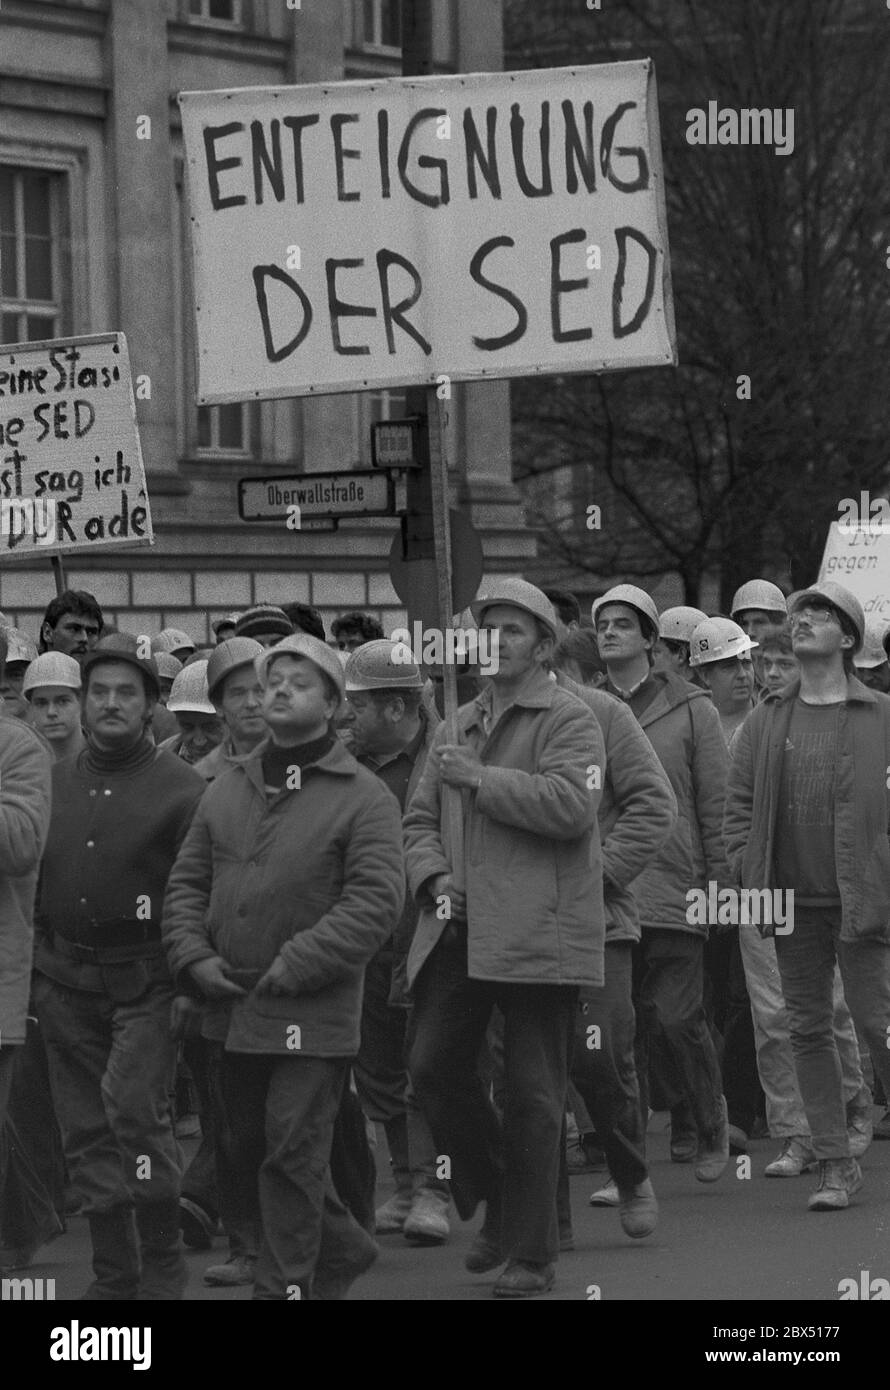 Berlino / GDR / Gennaio 1990 Demo a sostegno della Tavola rotonda, il governo Modrow non ha seguito gli ordini della Tavola rotonda. Di conseguenza, i lavoratori edili dei cantieri di Friedrichstrasse hanno smesso di lavorare e si sono trasferiti al Volkskammer. La maggior parte di loro ha lavorato per il VEB Ingenieurhochbau, dove ci sono forti gruppi di opposizione. -espropriazione della SED- // opposizione / Tavola rotonda / Wende / unificazione / GDR-Politica *** titolo locale *** Germania orientale / Germania comunista / Oppositionautorità statali Beside nel 1990 è stata installata una tavola rotonda. Tutti i gruppi di opposizione, Stato Foto Stock